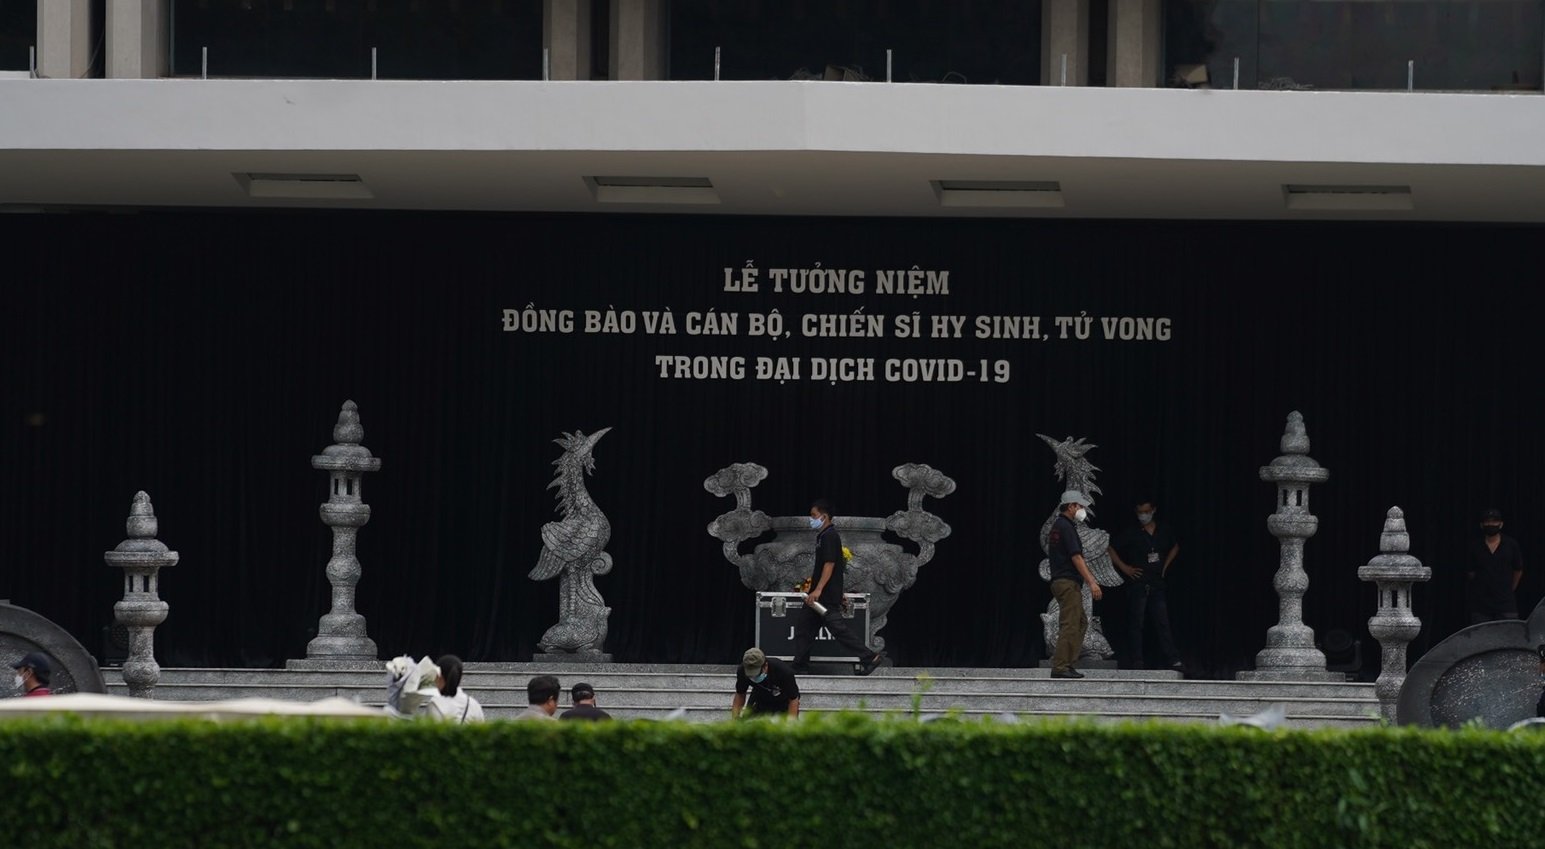 Các điểm cầu làm lễ Tưởng niệm tại TP Hồ Chí Minh đã hoàn tất các công đoạn chuẩn bị.